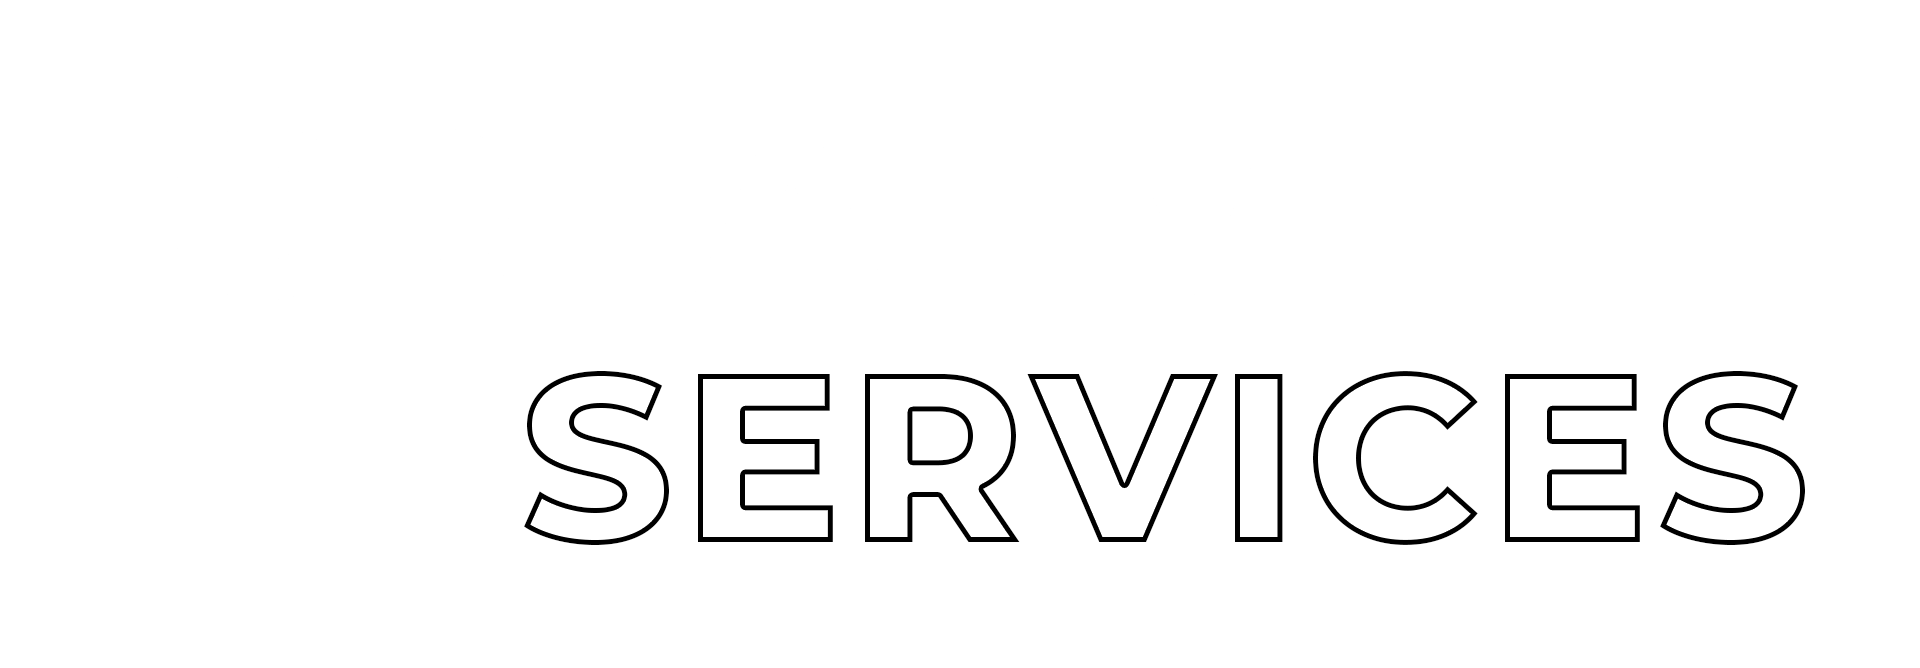 Creative Services Brisbane